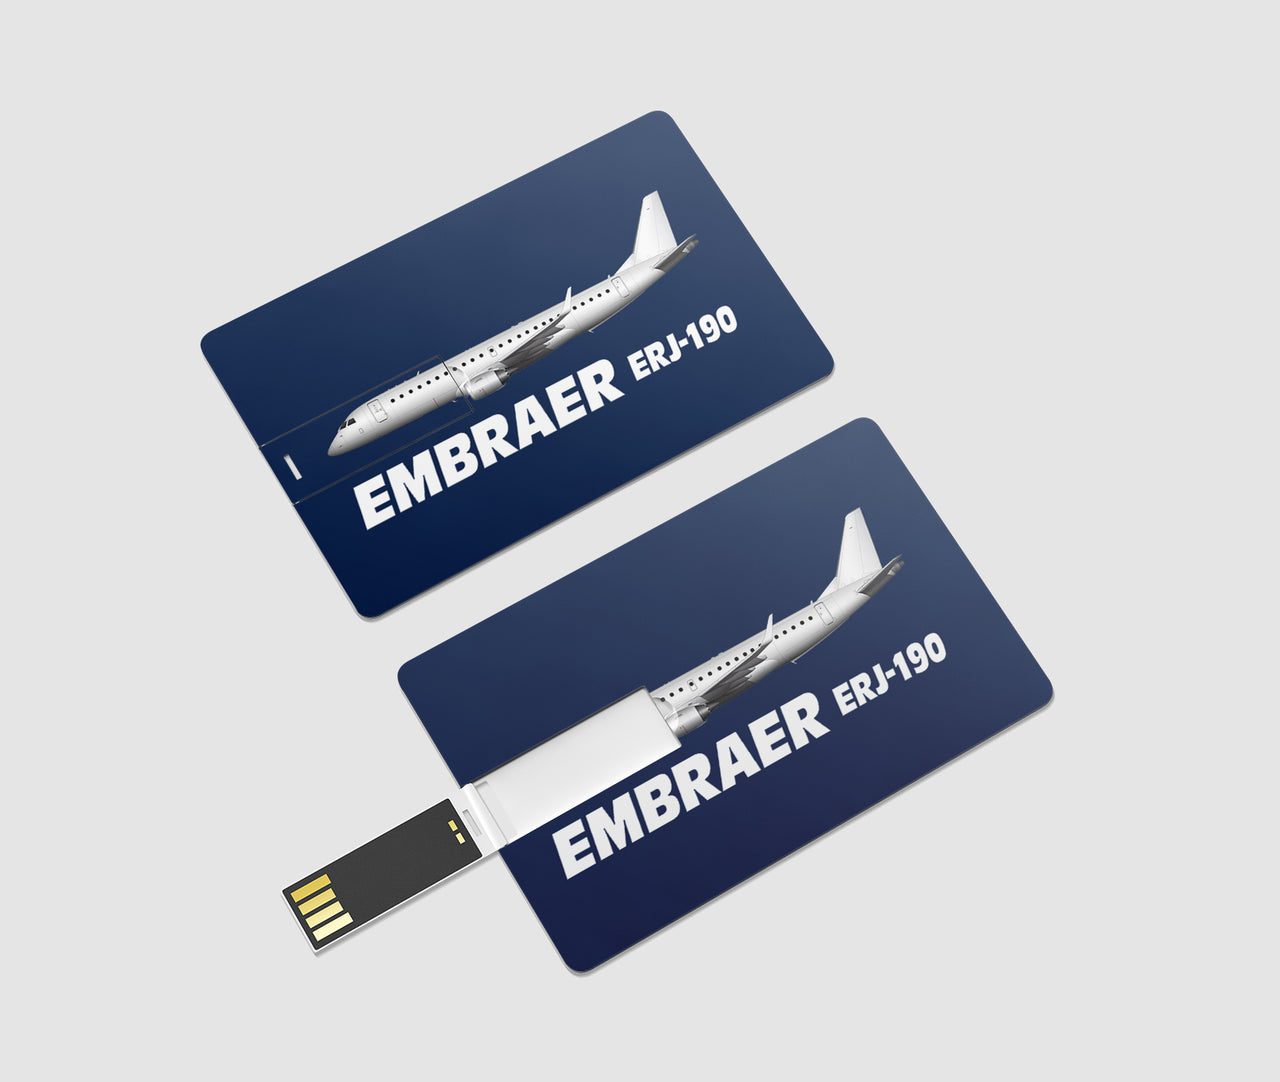 The Embraer ERJ-190 Designed USB Cards